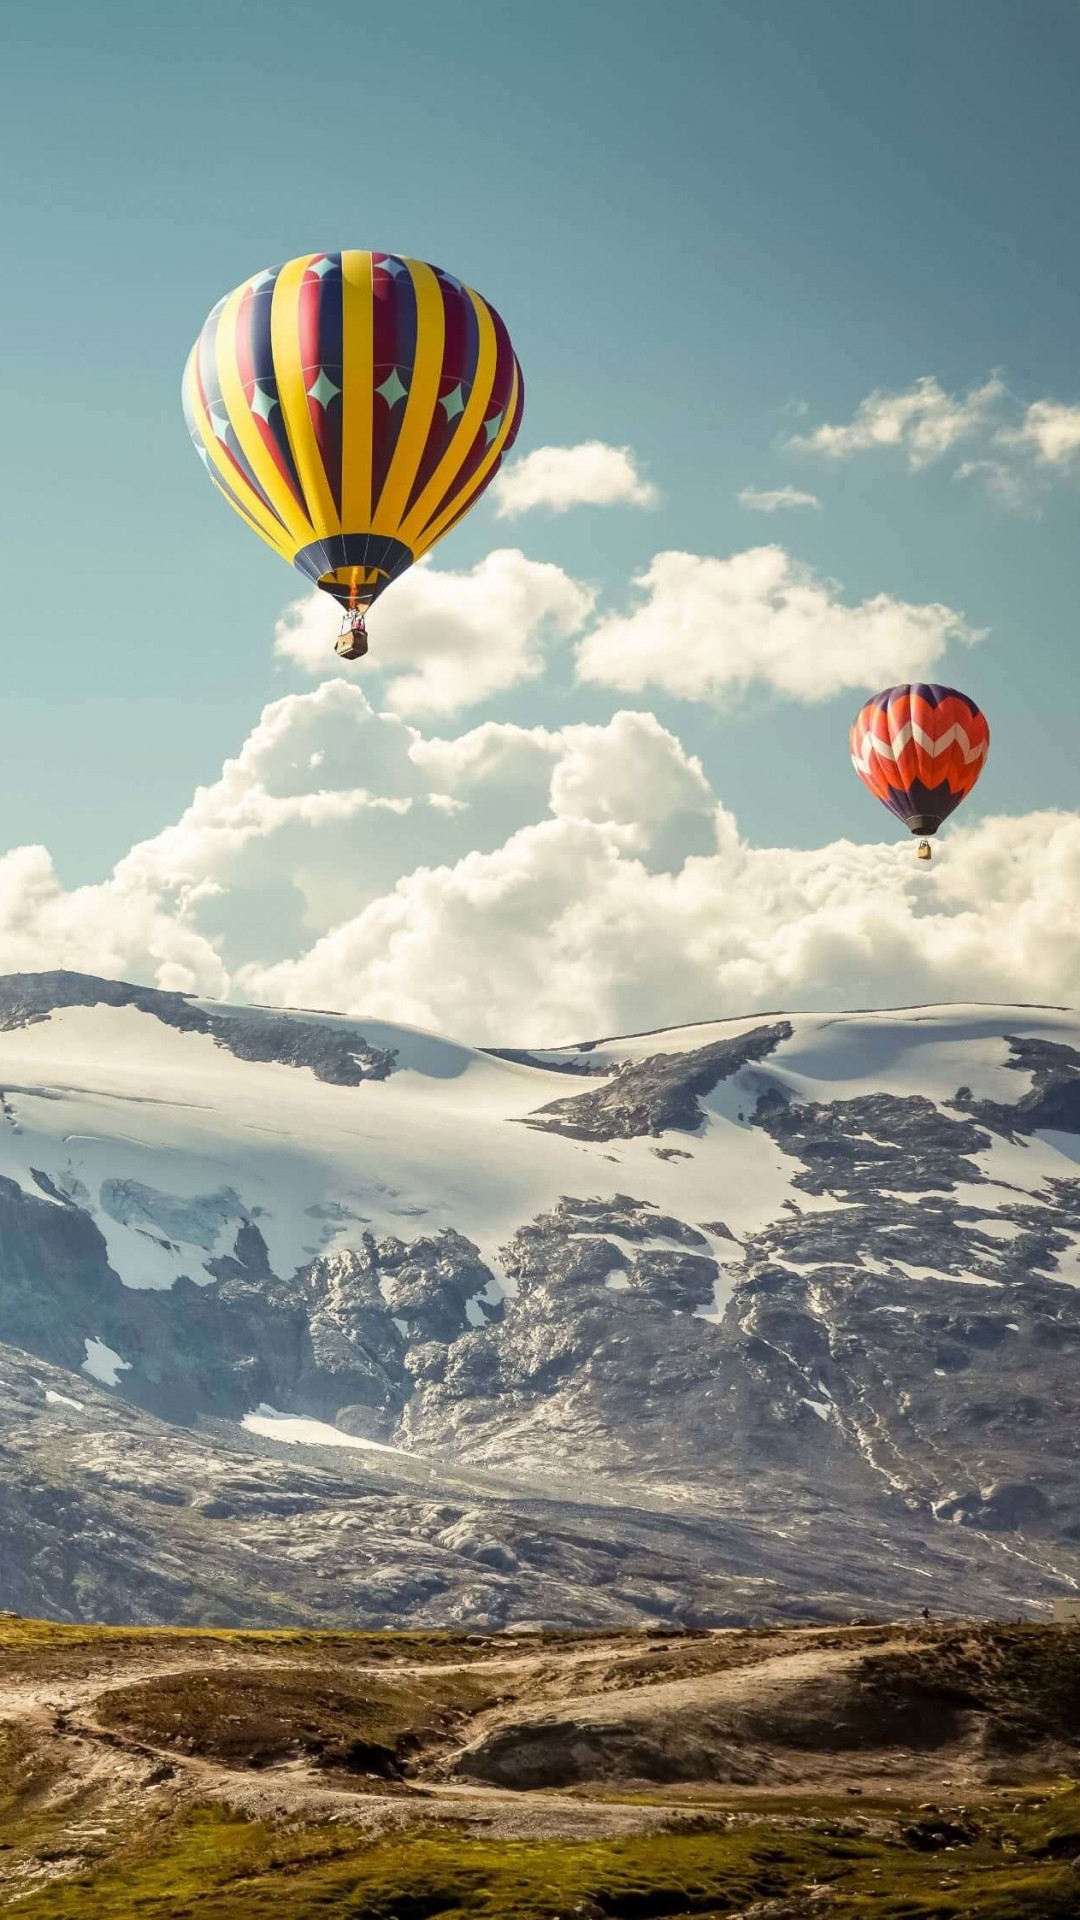 Hot Air Balloon Over the Mountain Wallpaper for Google Nexus 5